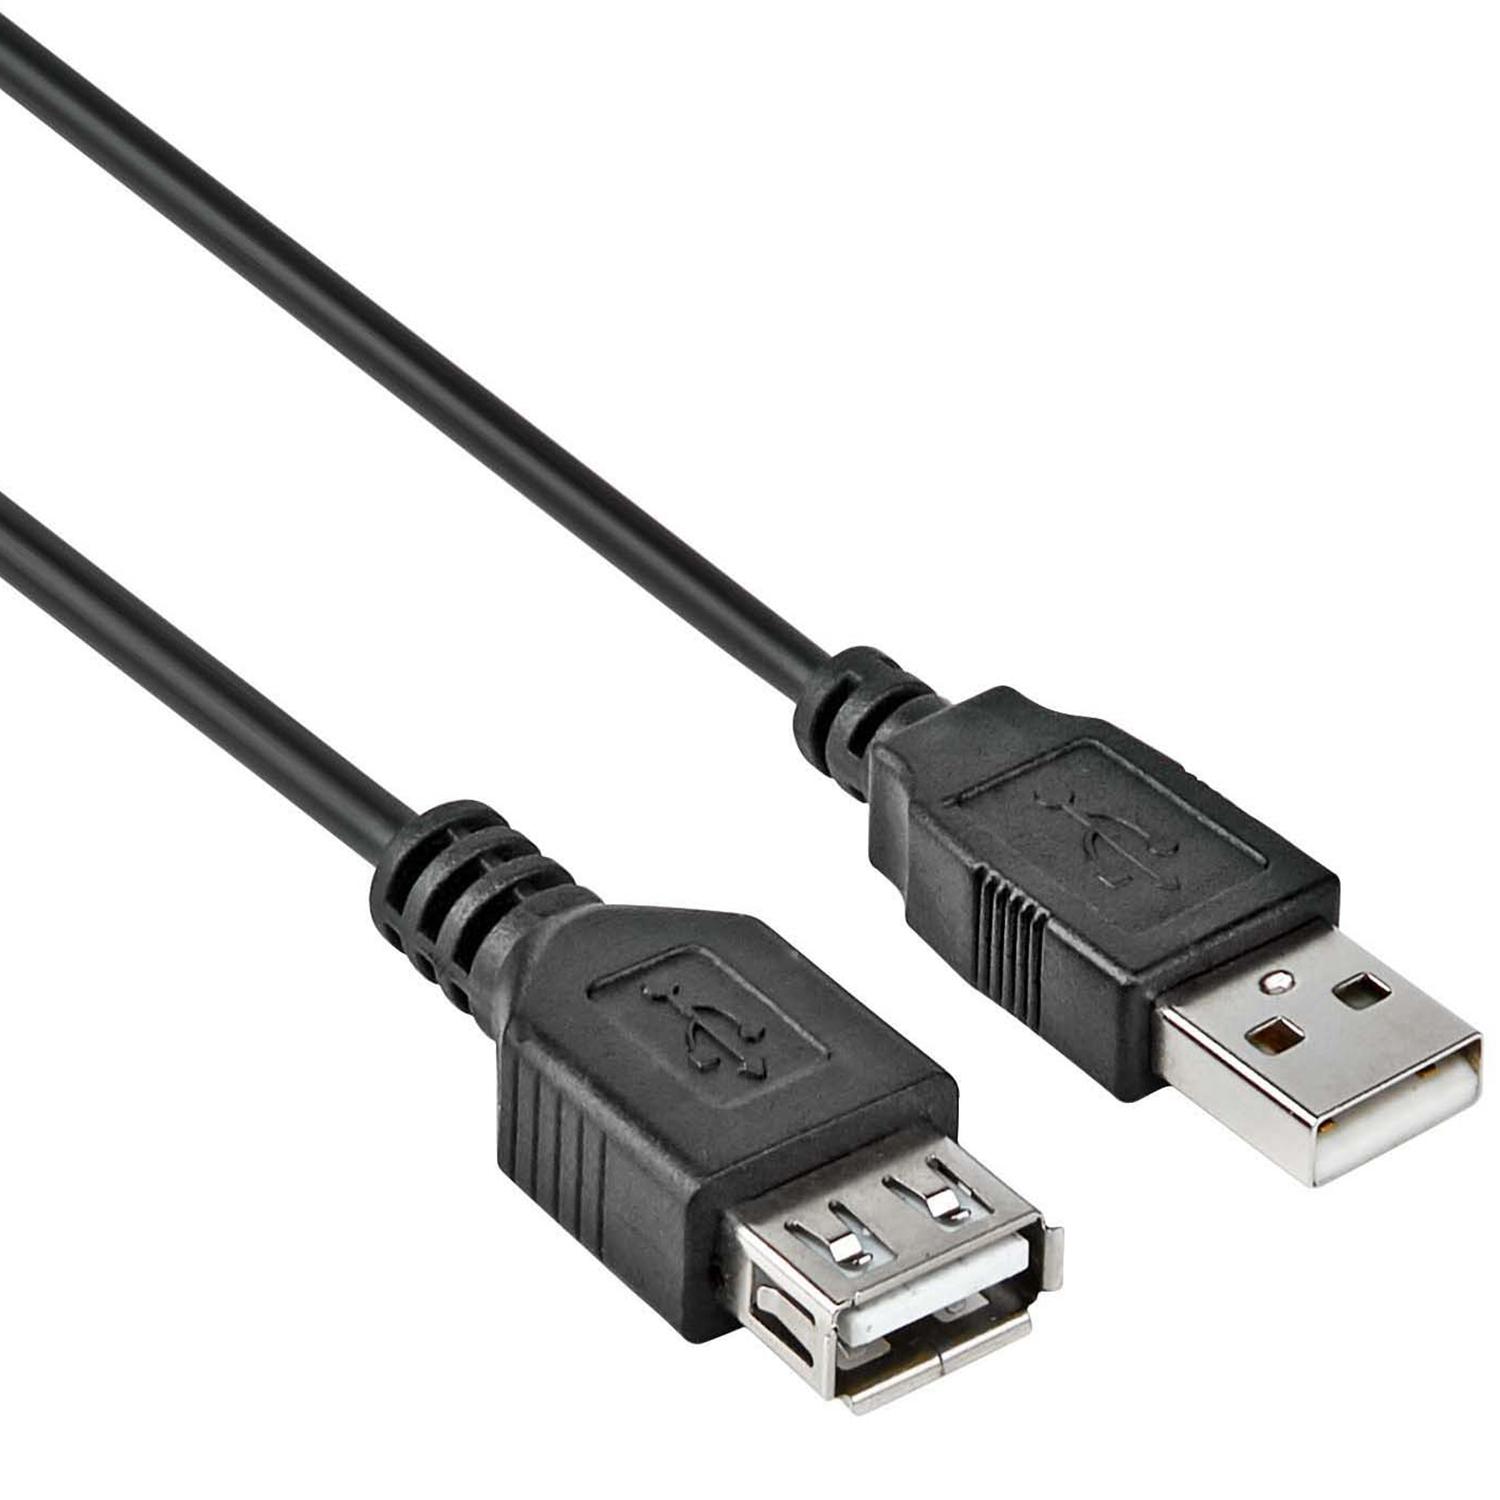 Becks vertrekken Mark USB 2.0 kabel - Merk: Allteq Aansluiting 1: USB A male Aansluiting 2: USB A  female Kleur: Zwart